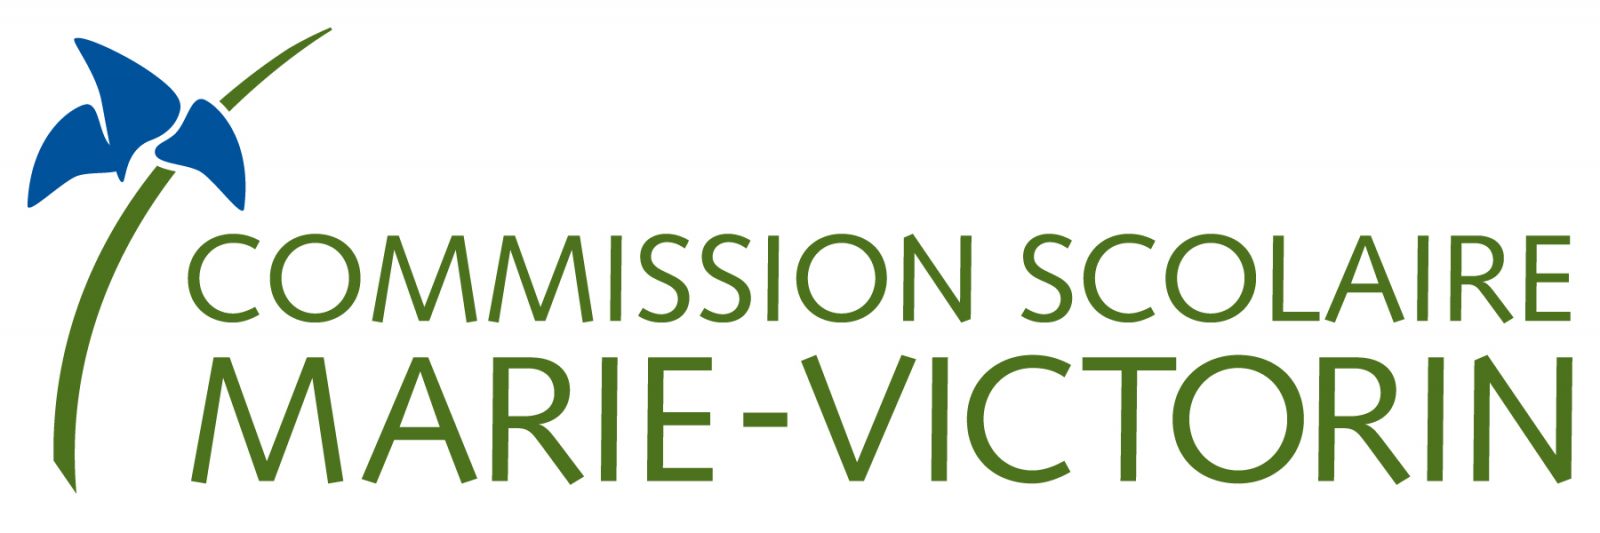 Léger surplus enregistré à la Commission scolaire Marie-Victorin en 2018-2019